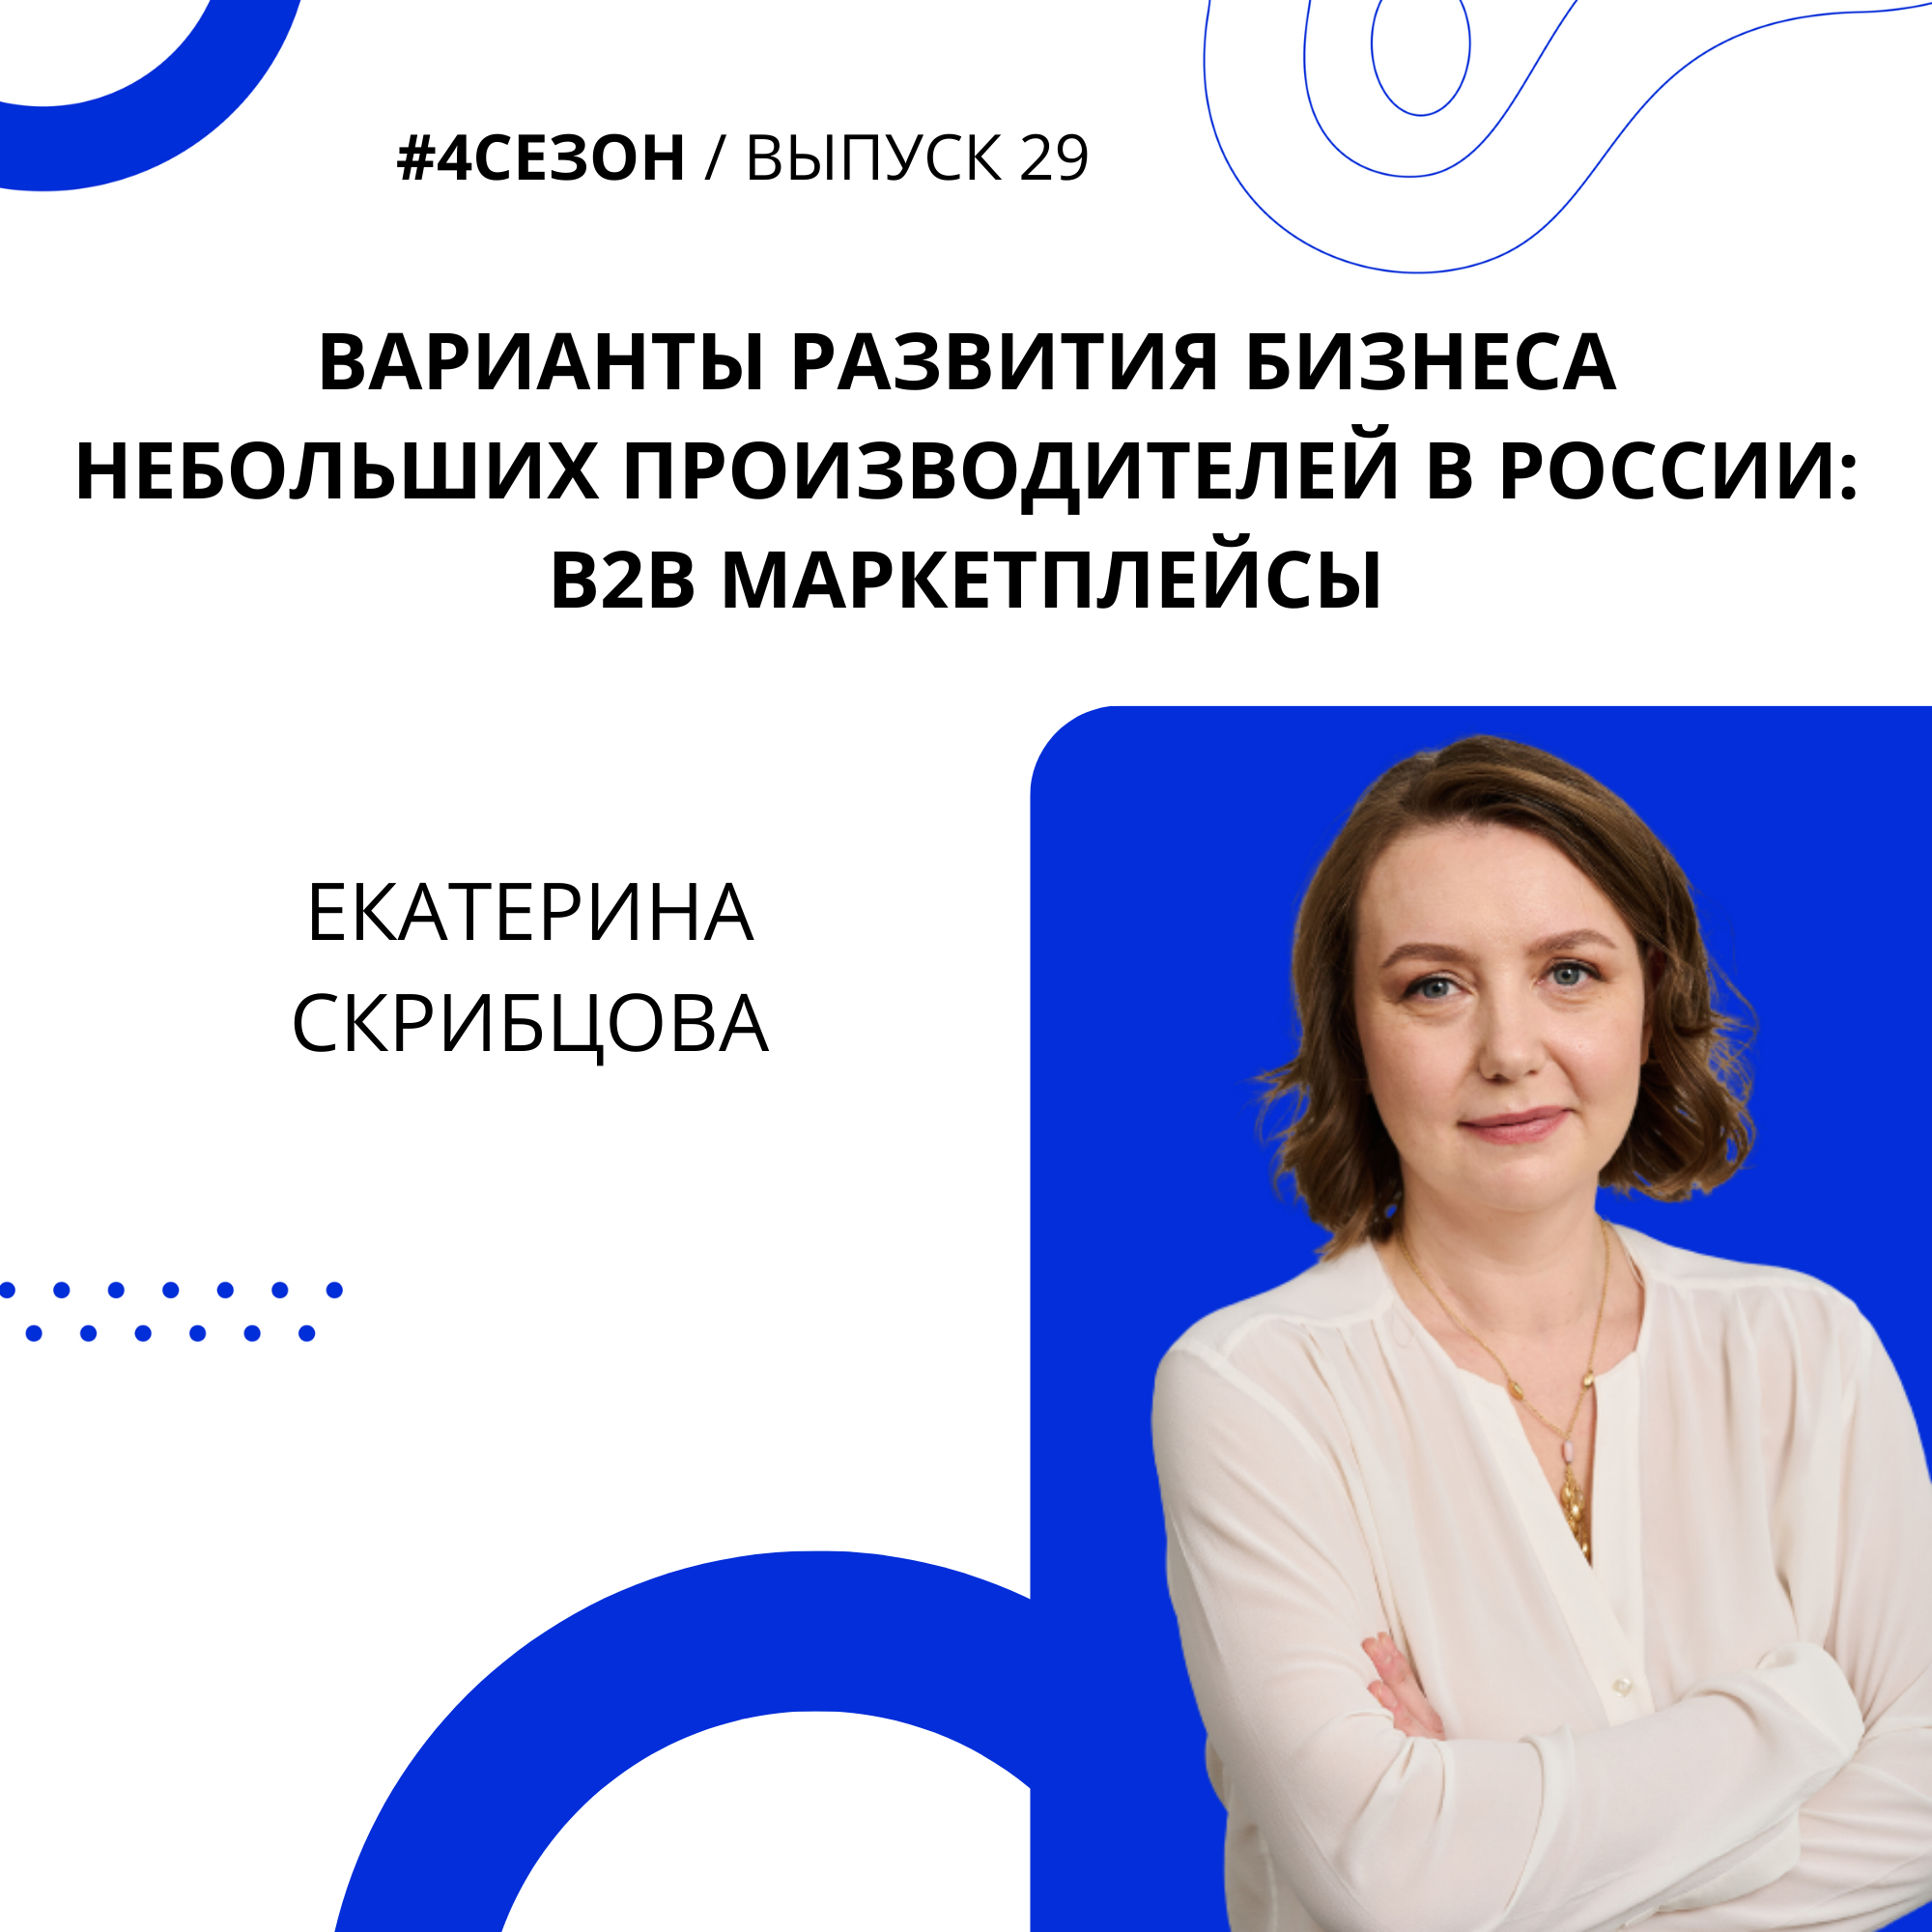 Екатерина Скрибцова - варианты развития бизнеса небольших производителей в России: b2b маркетплейсы